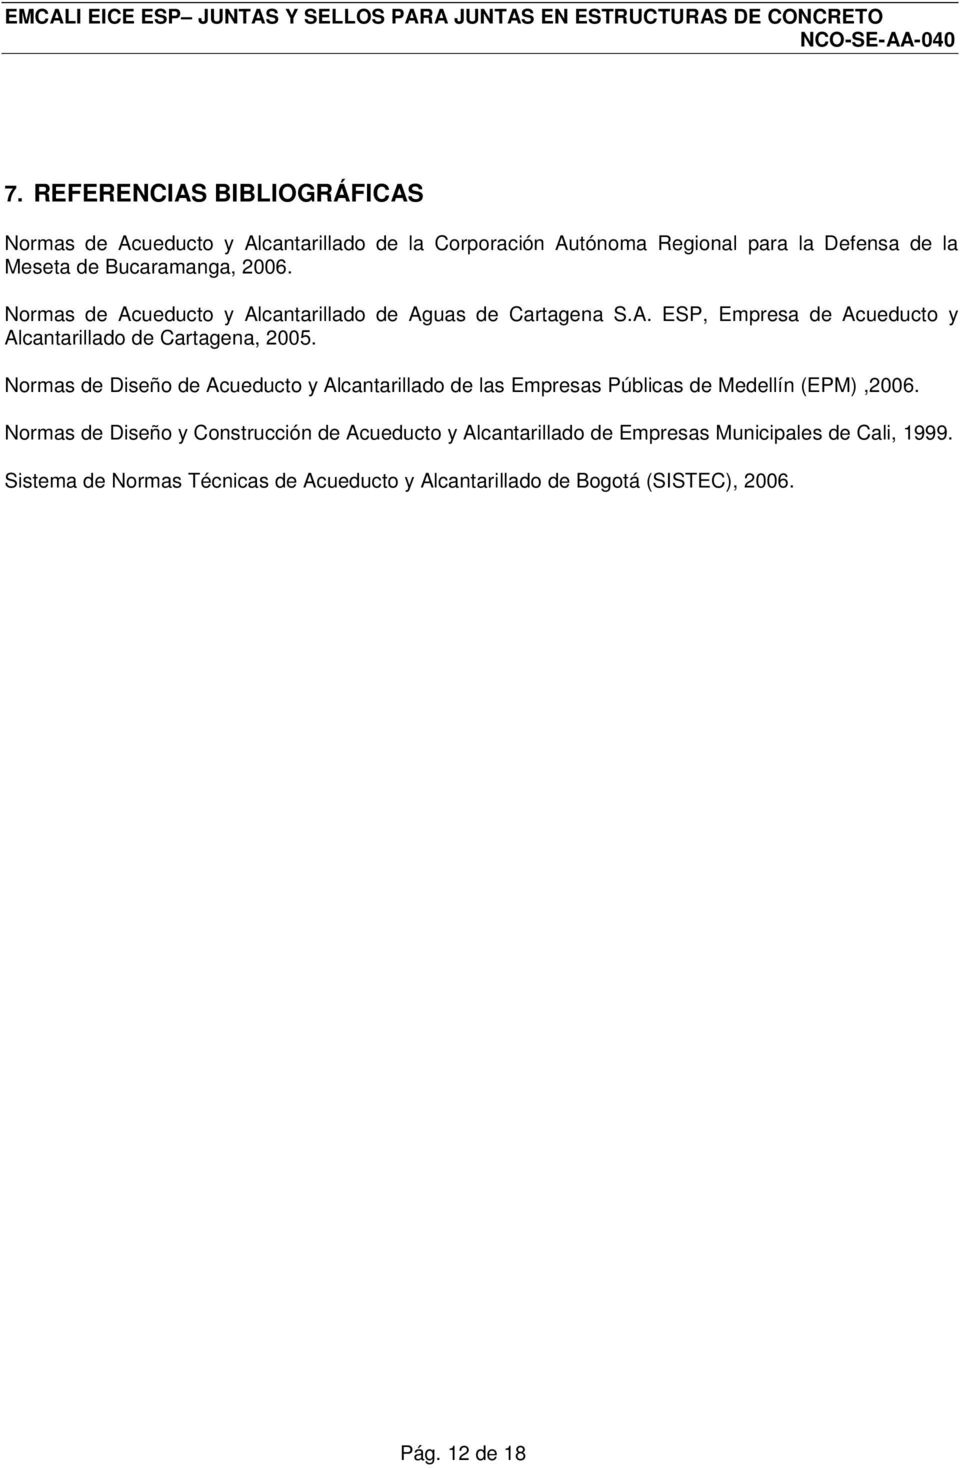 Normas de Diseño de Acueducto y Alcantarillado de las Empresas Públicas de Medellín (EPM),2006.